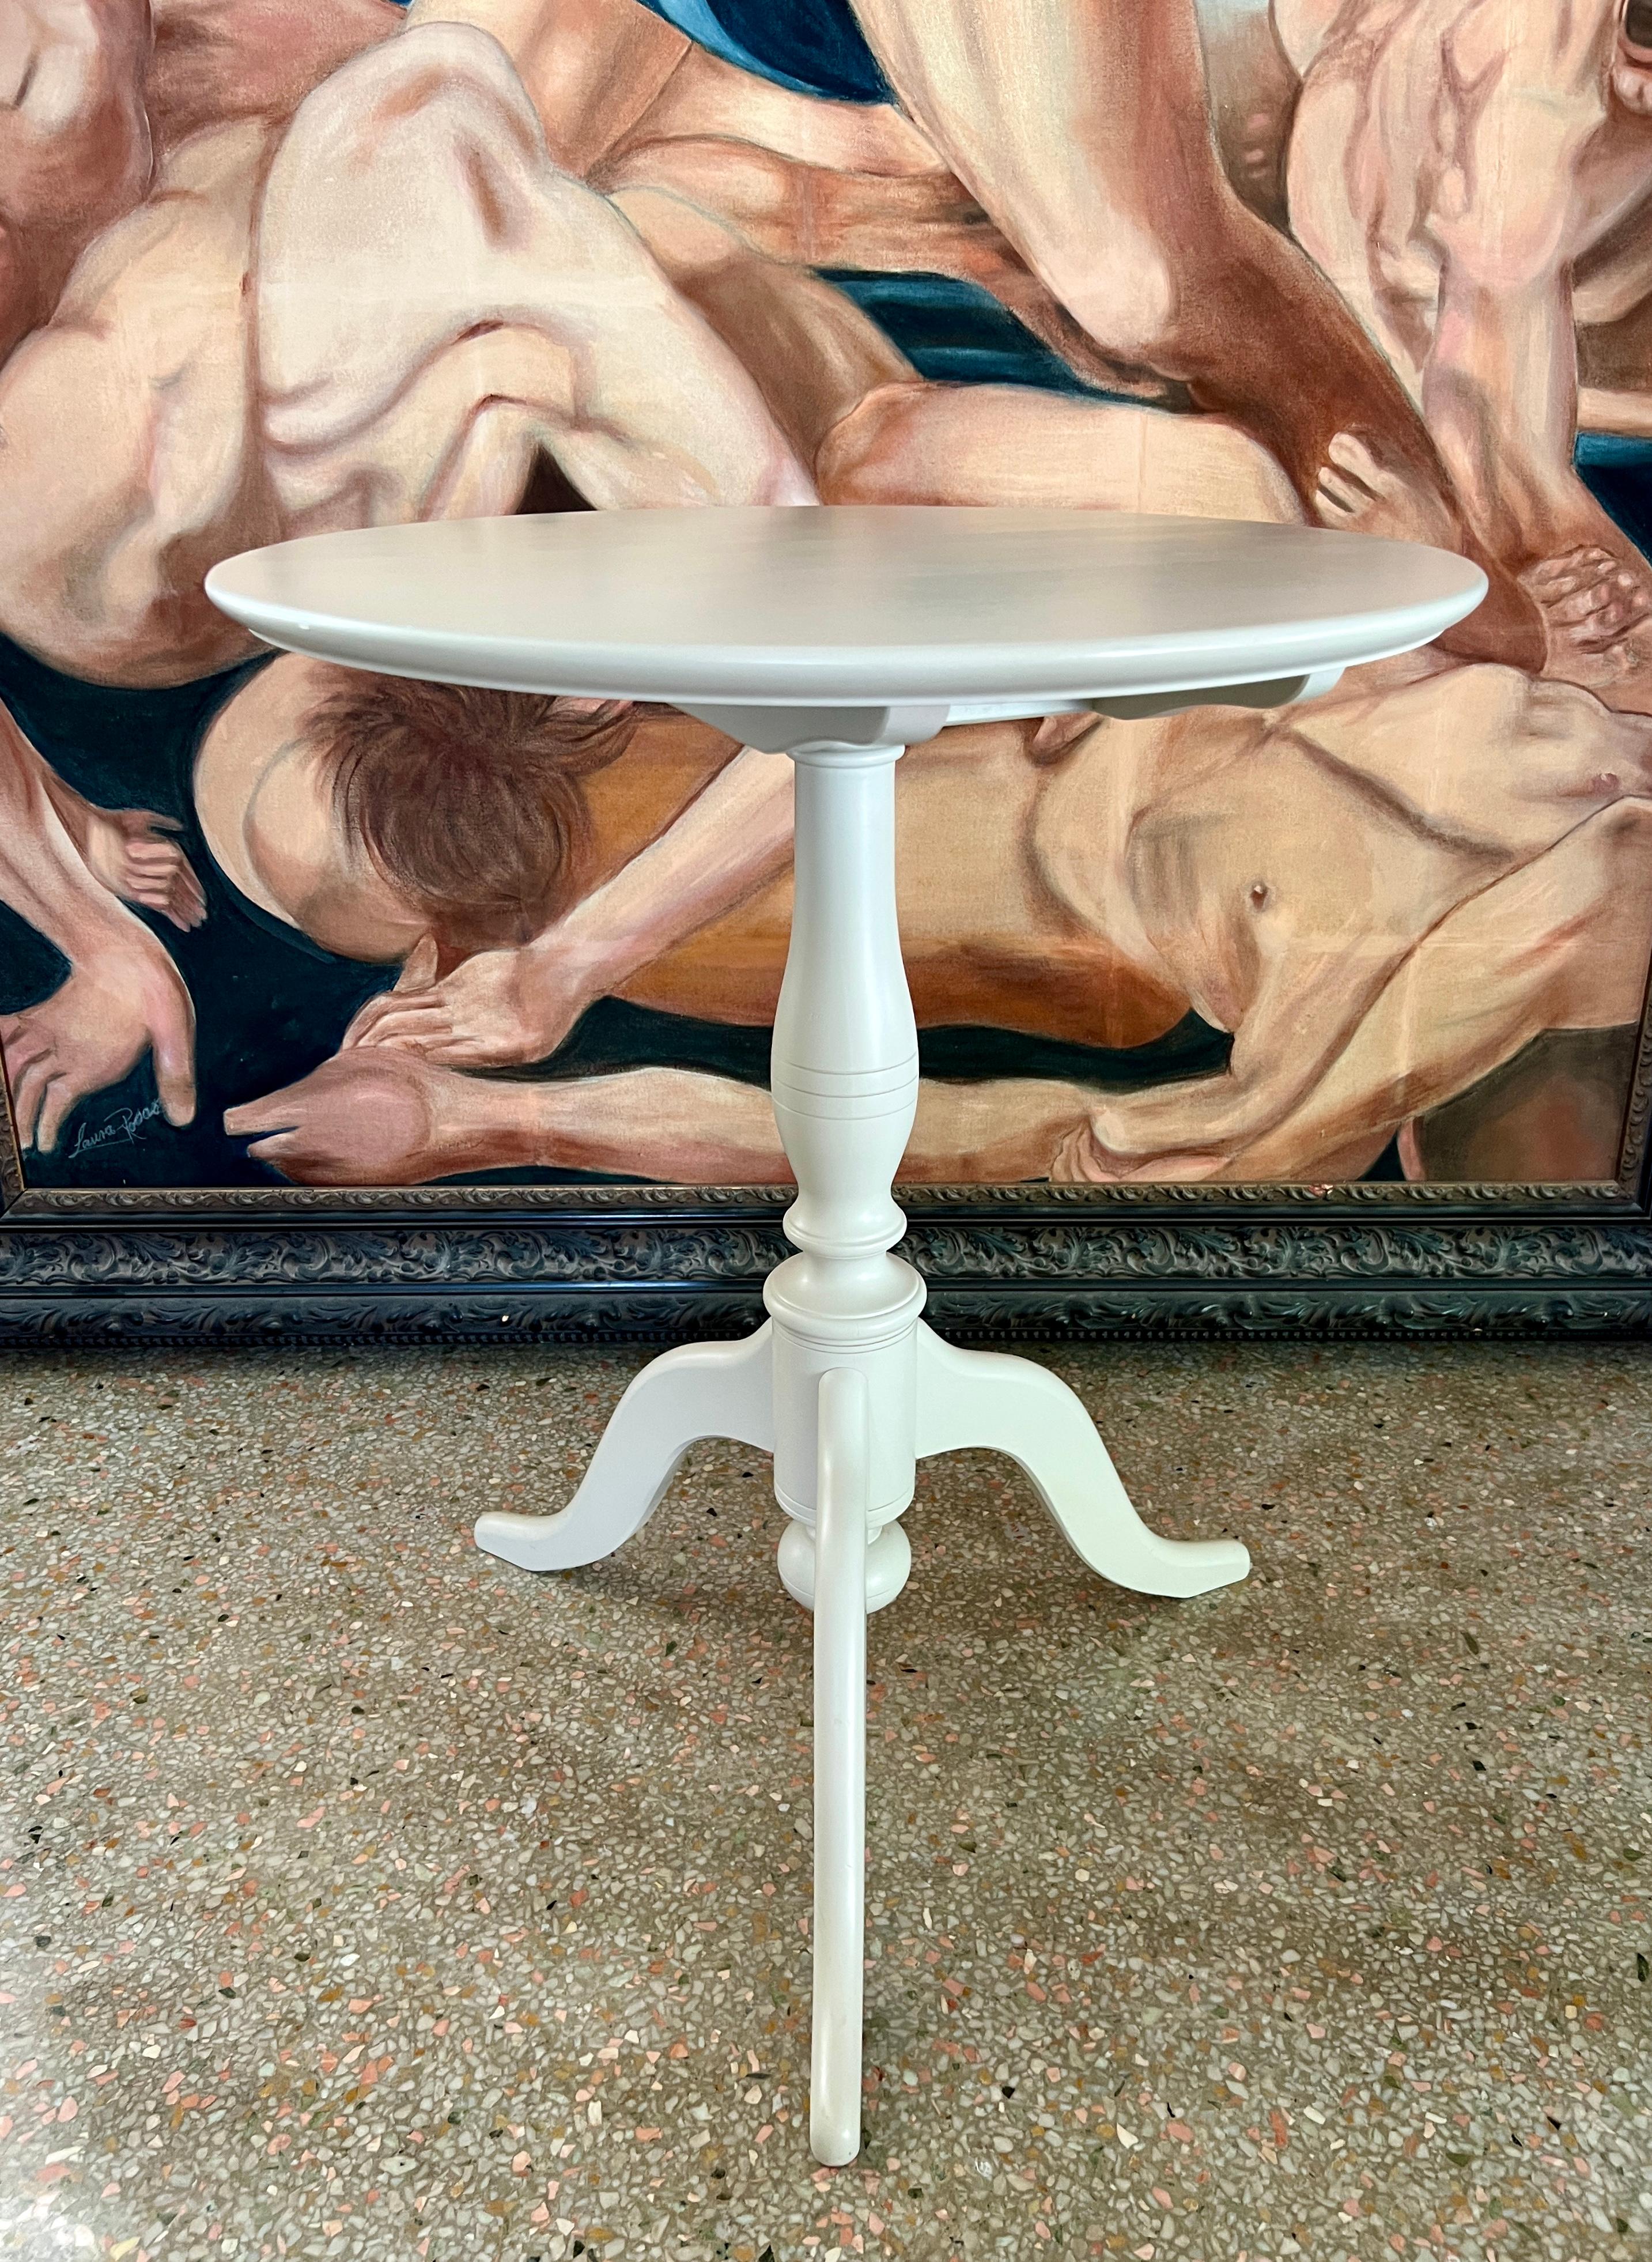 Tisch im gustavianischen Stil, basierend auf antiken Guéridon-Tischen aus dem Schweden des 19. Jahrhunderts, mit geneigter Platte. Der Kippmechanismus ermöglicht es, die Tischplatte vollständig zu drehen und seitlich zu arretieren, wenn sie nicht